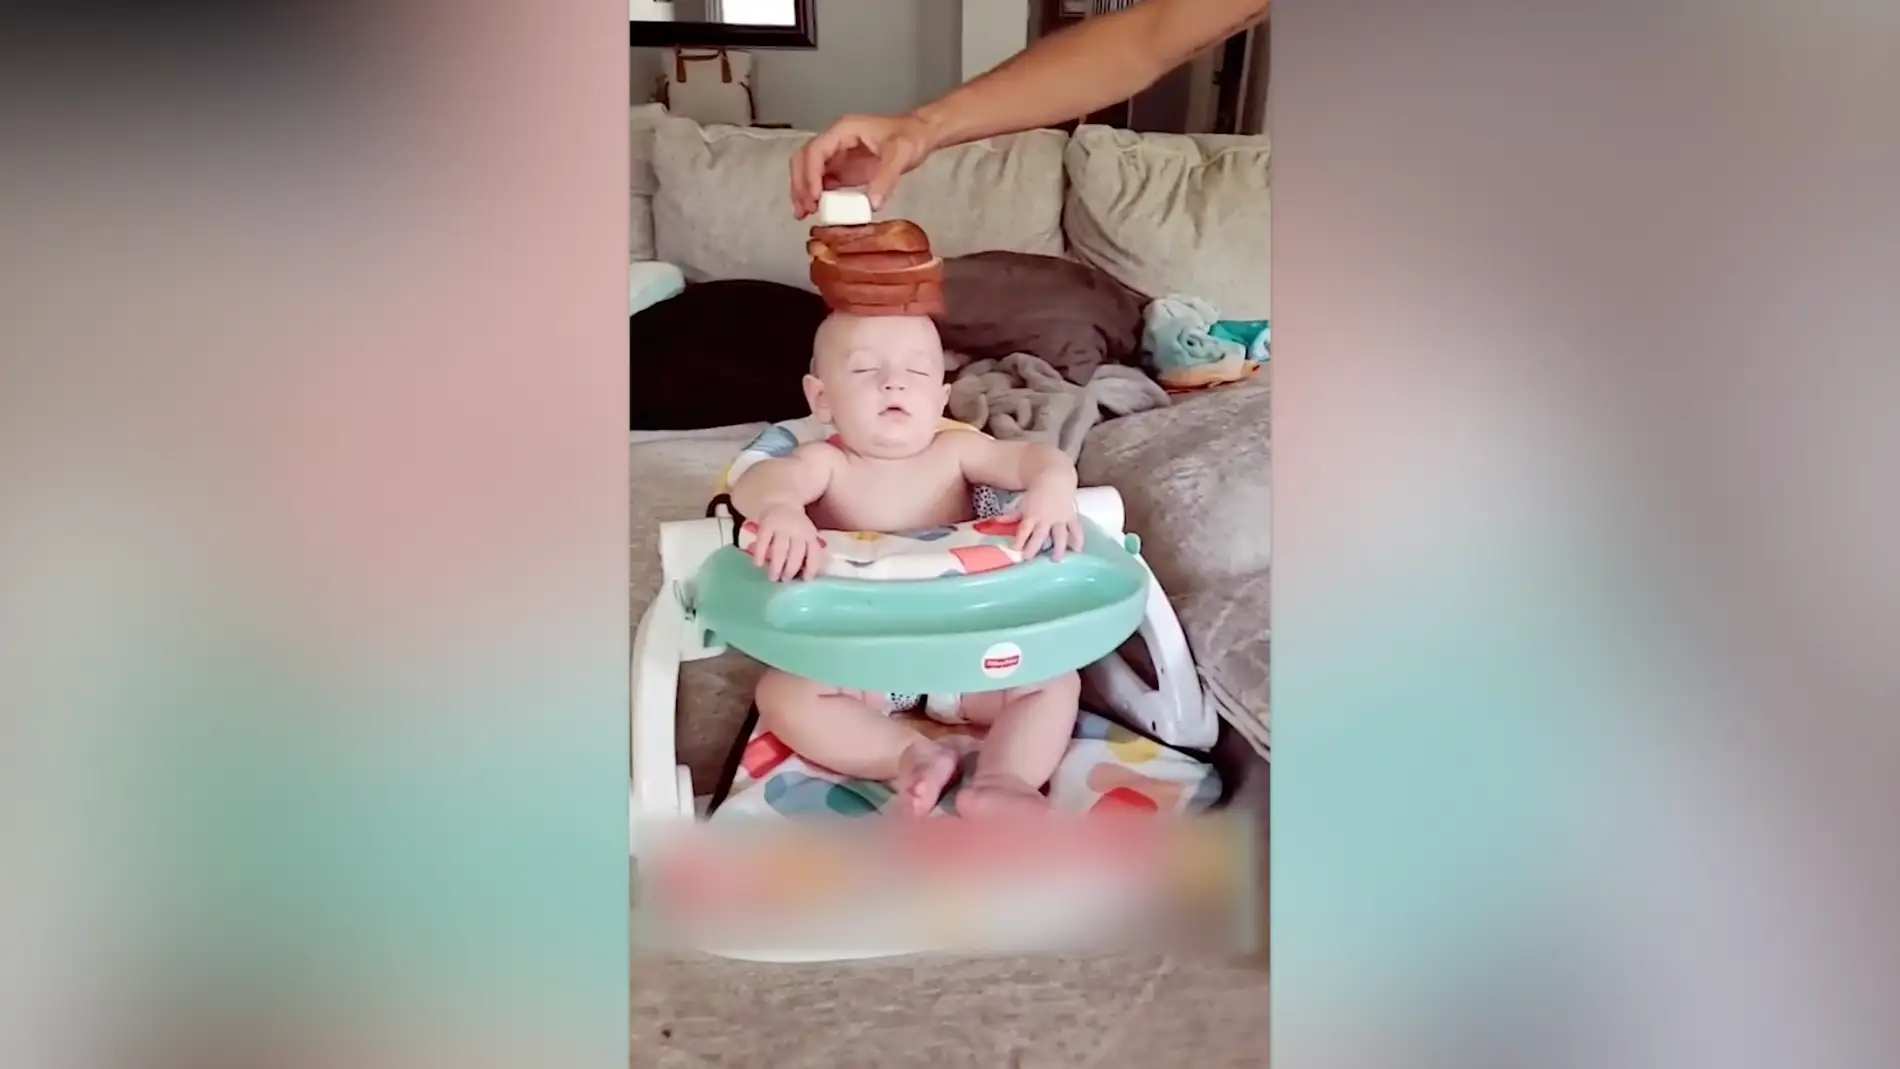 Balancea comida sobre la cabeza de su hijo